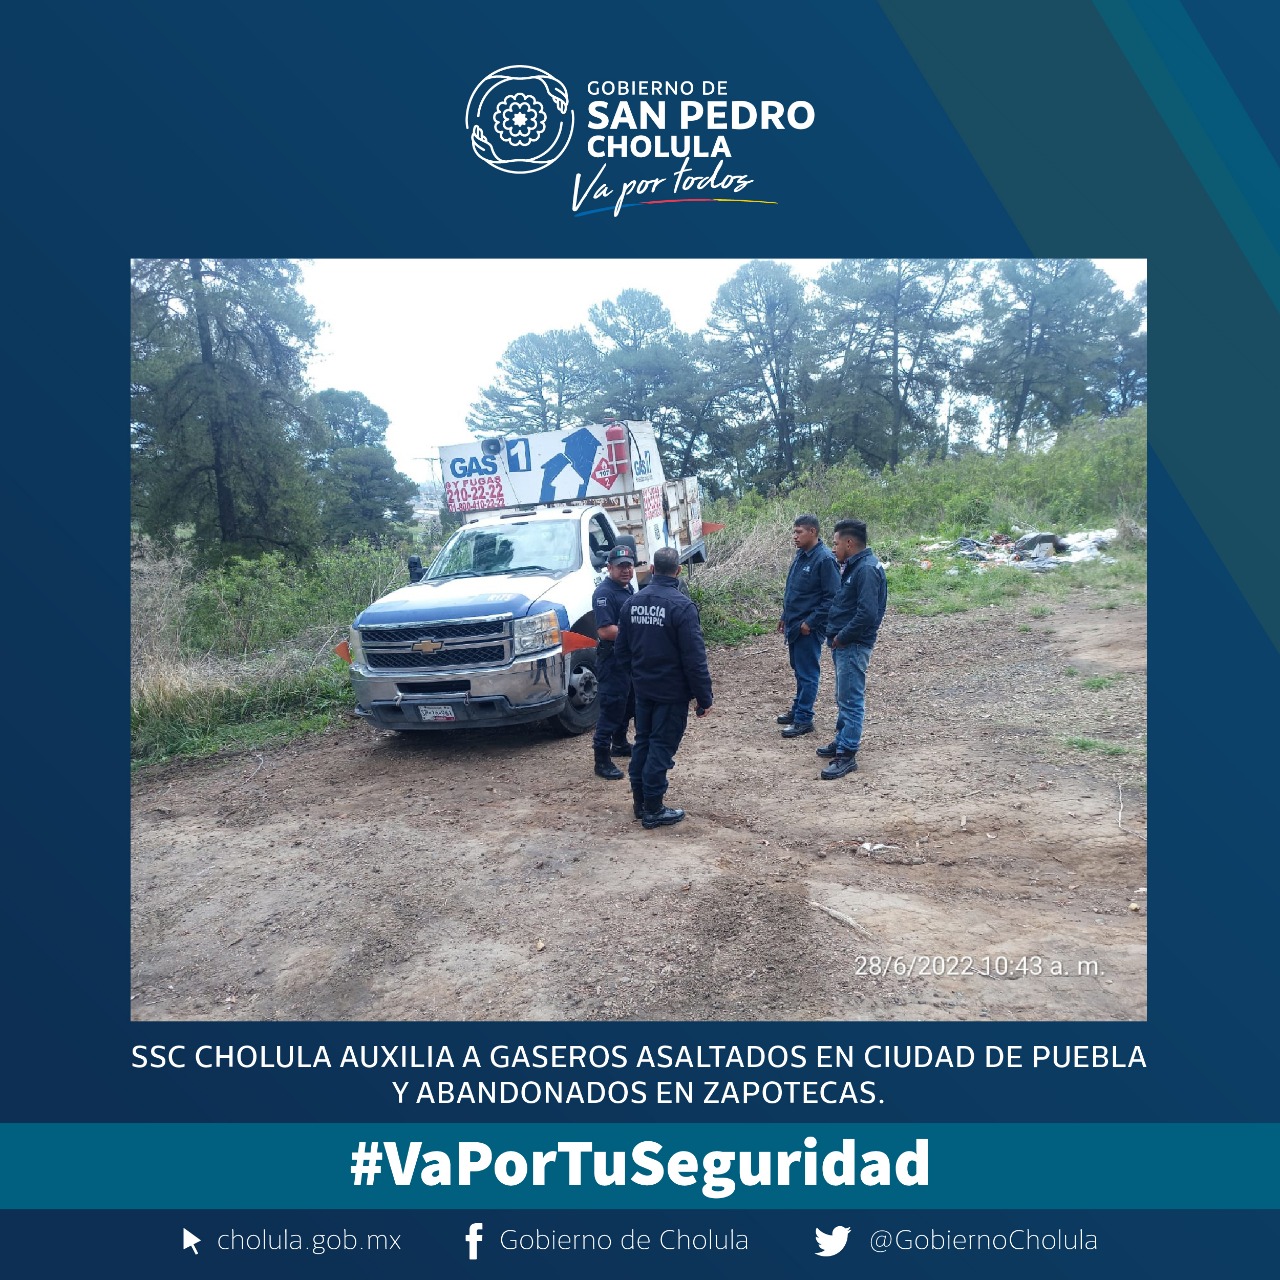 SSC Cholula auxilia a gaseros asaltados en Puebla y abandonados en Zapotecas